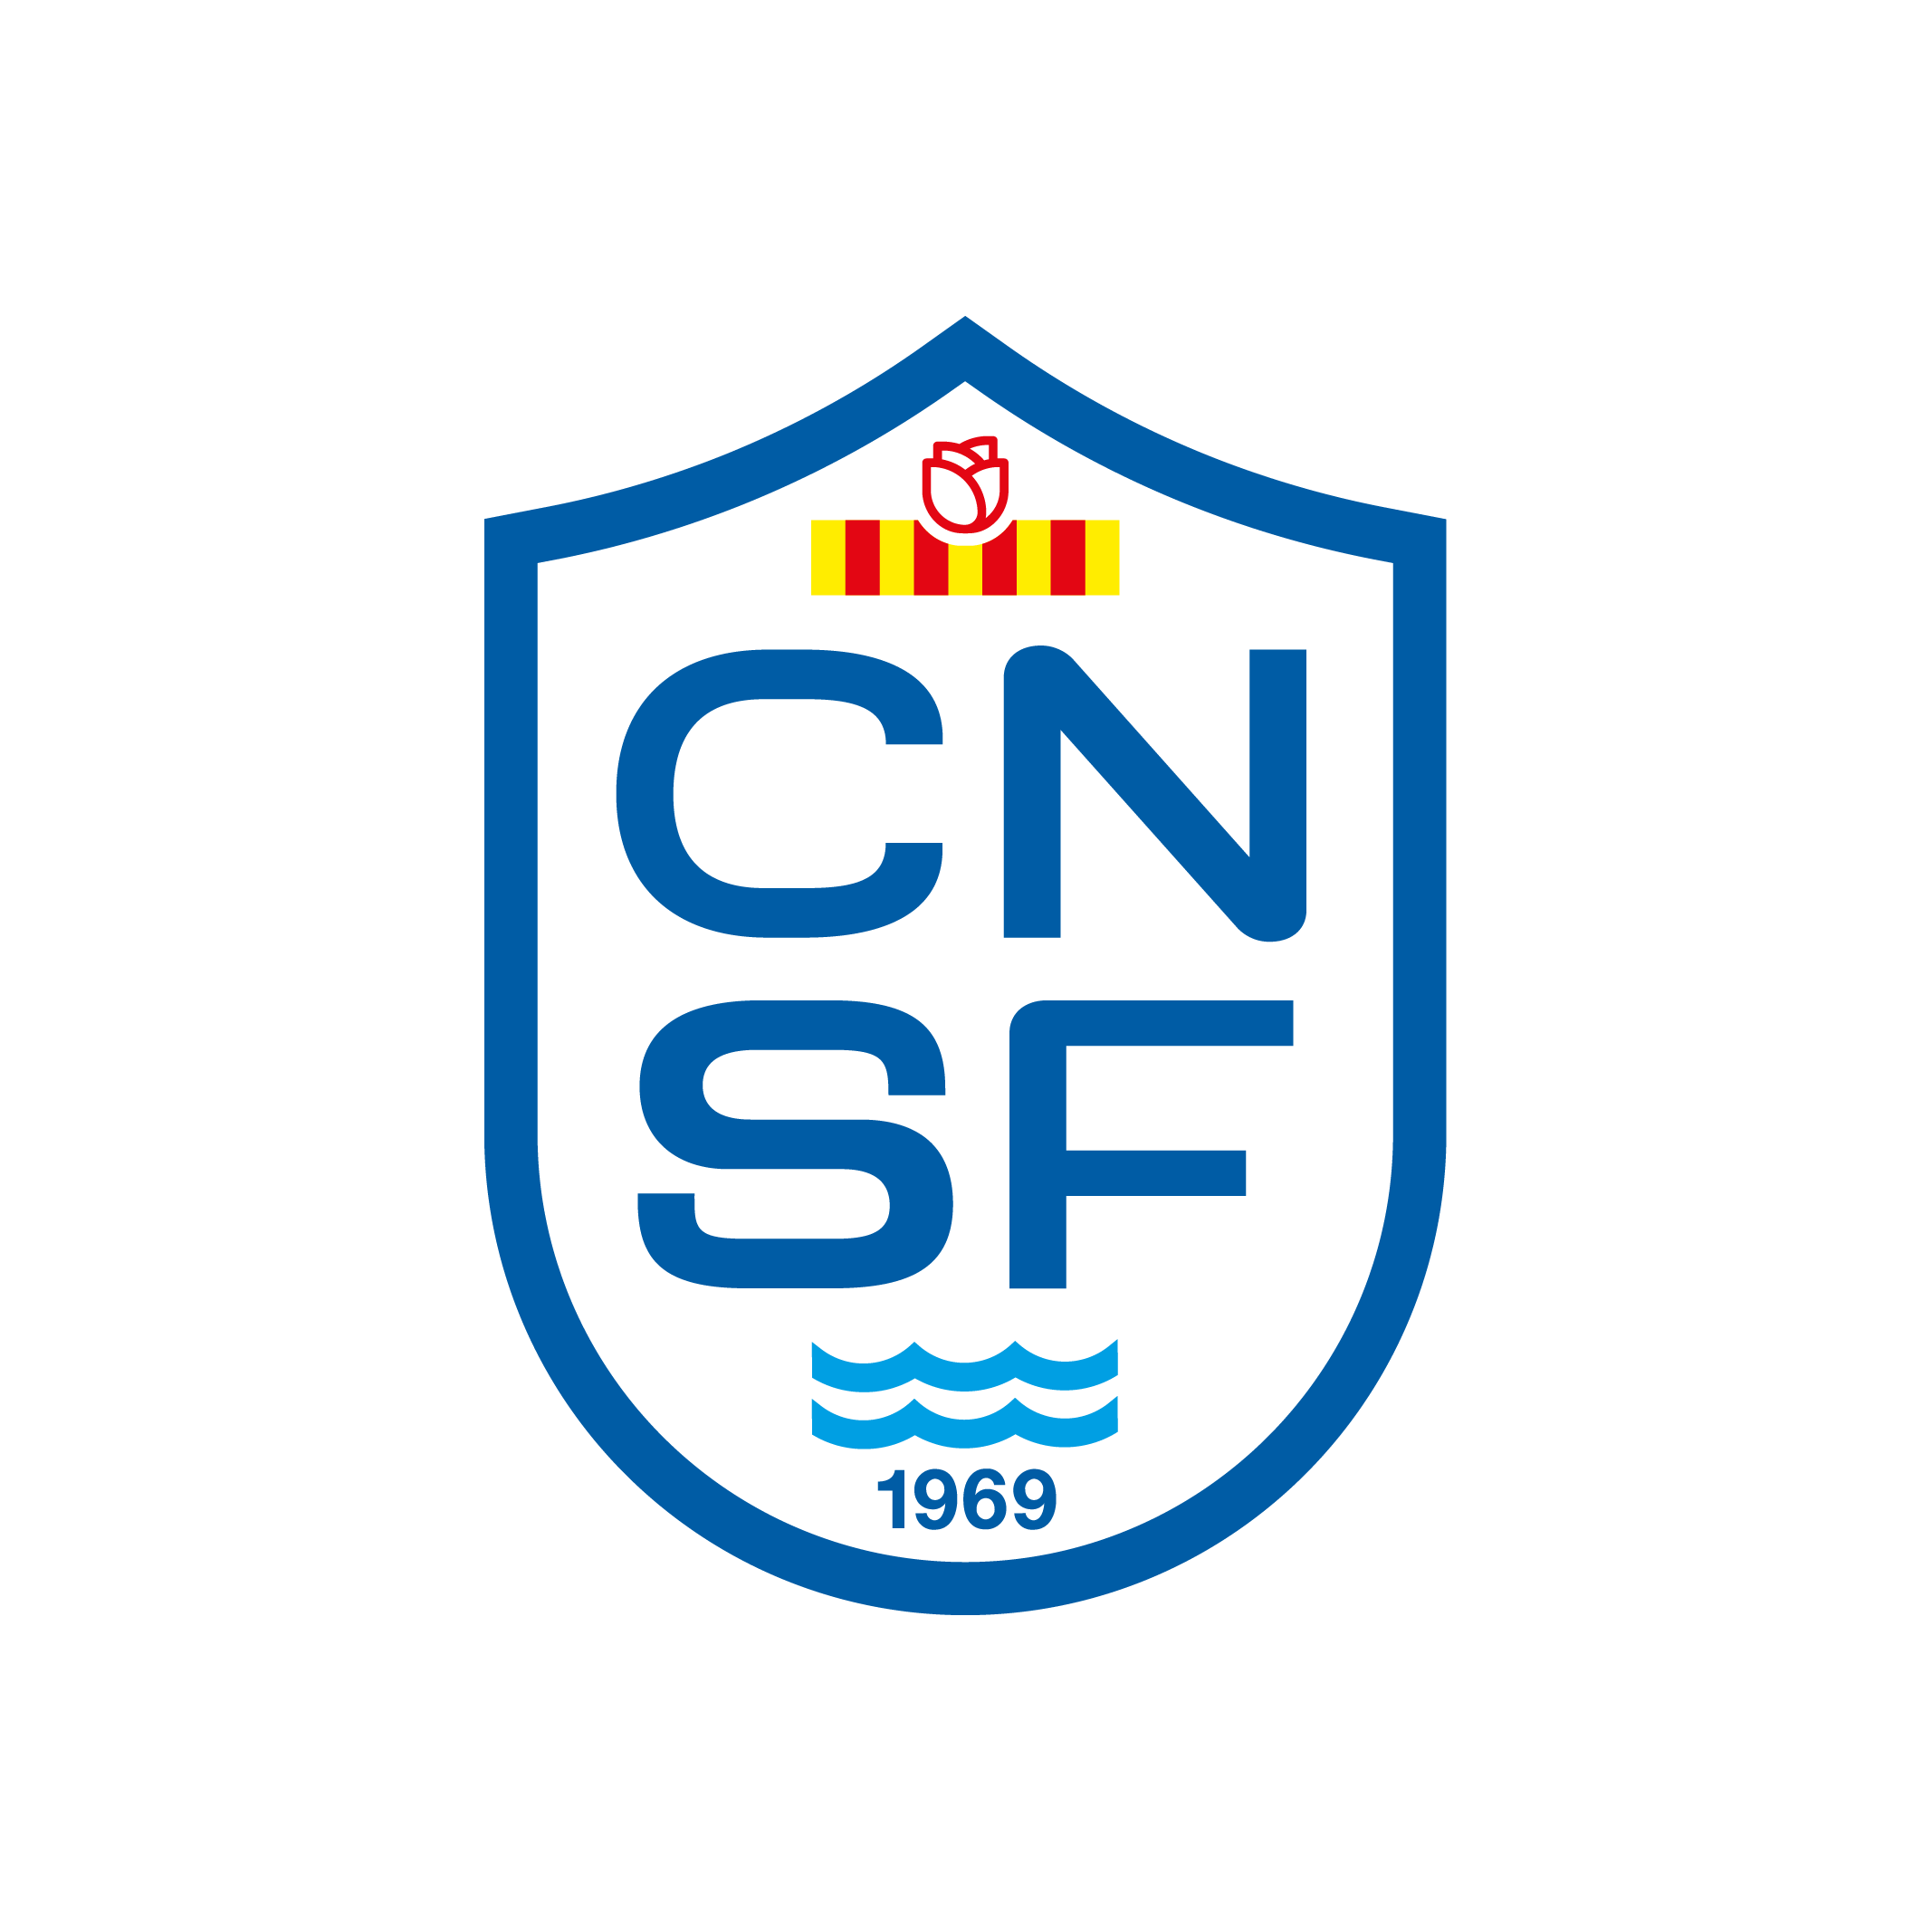 CNFU com 7 Atletas - Clube de Natação do Fundão\GIRASSOL